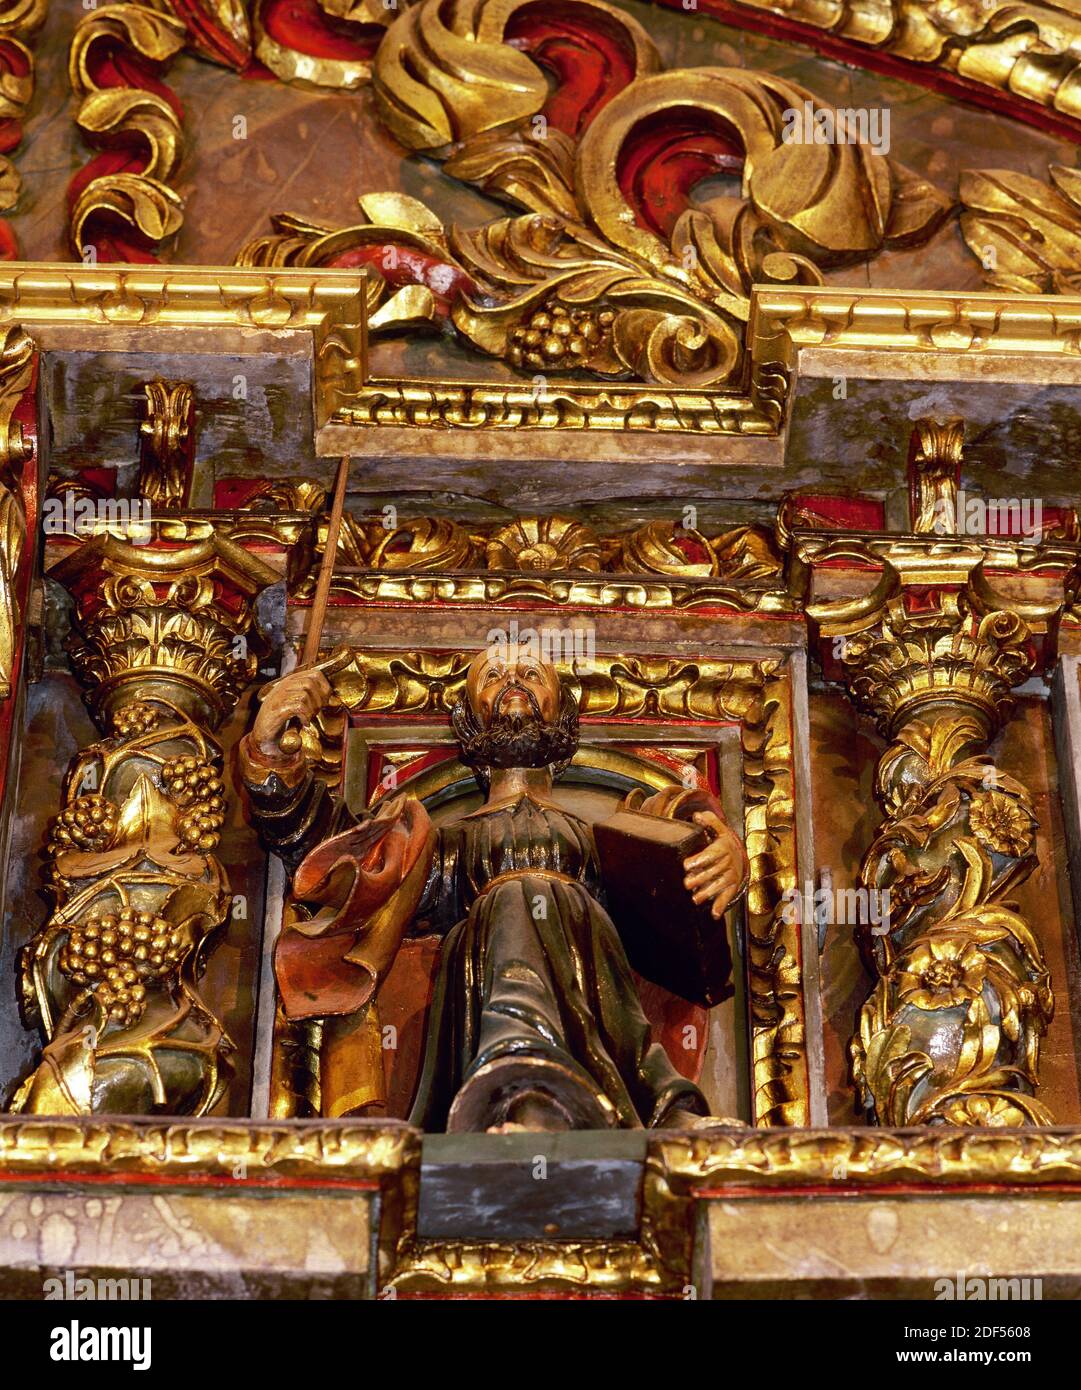 Spain, Galicia, Province of La Coruña, San Andres de Teixido (Santo Andre de Teixido). Sanctuary. Baroque altarpiece, 18th century, on the main altar, by Miguel Lopez de la Peña. Image of one of the twelve apostles depicted. Stock Photo